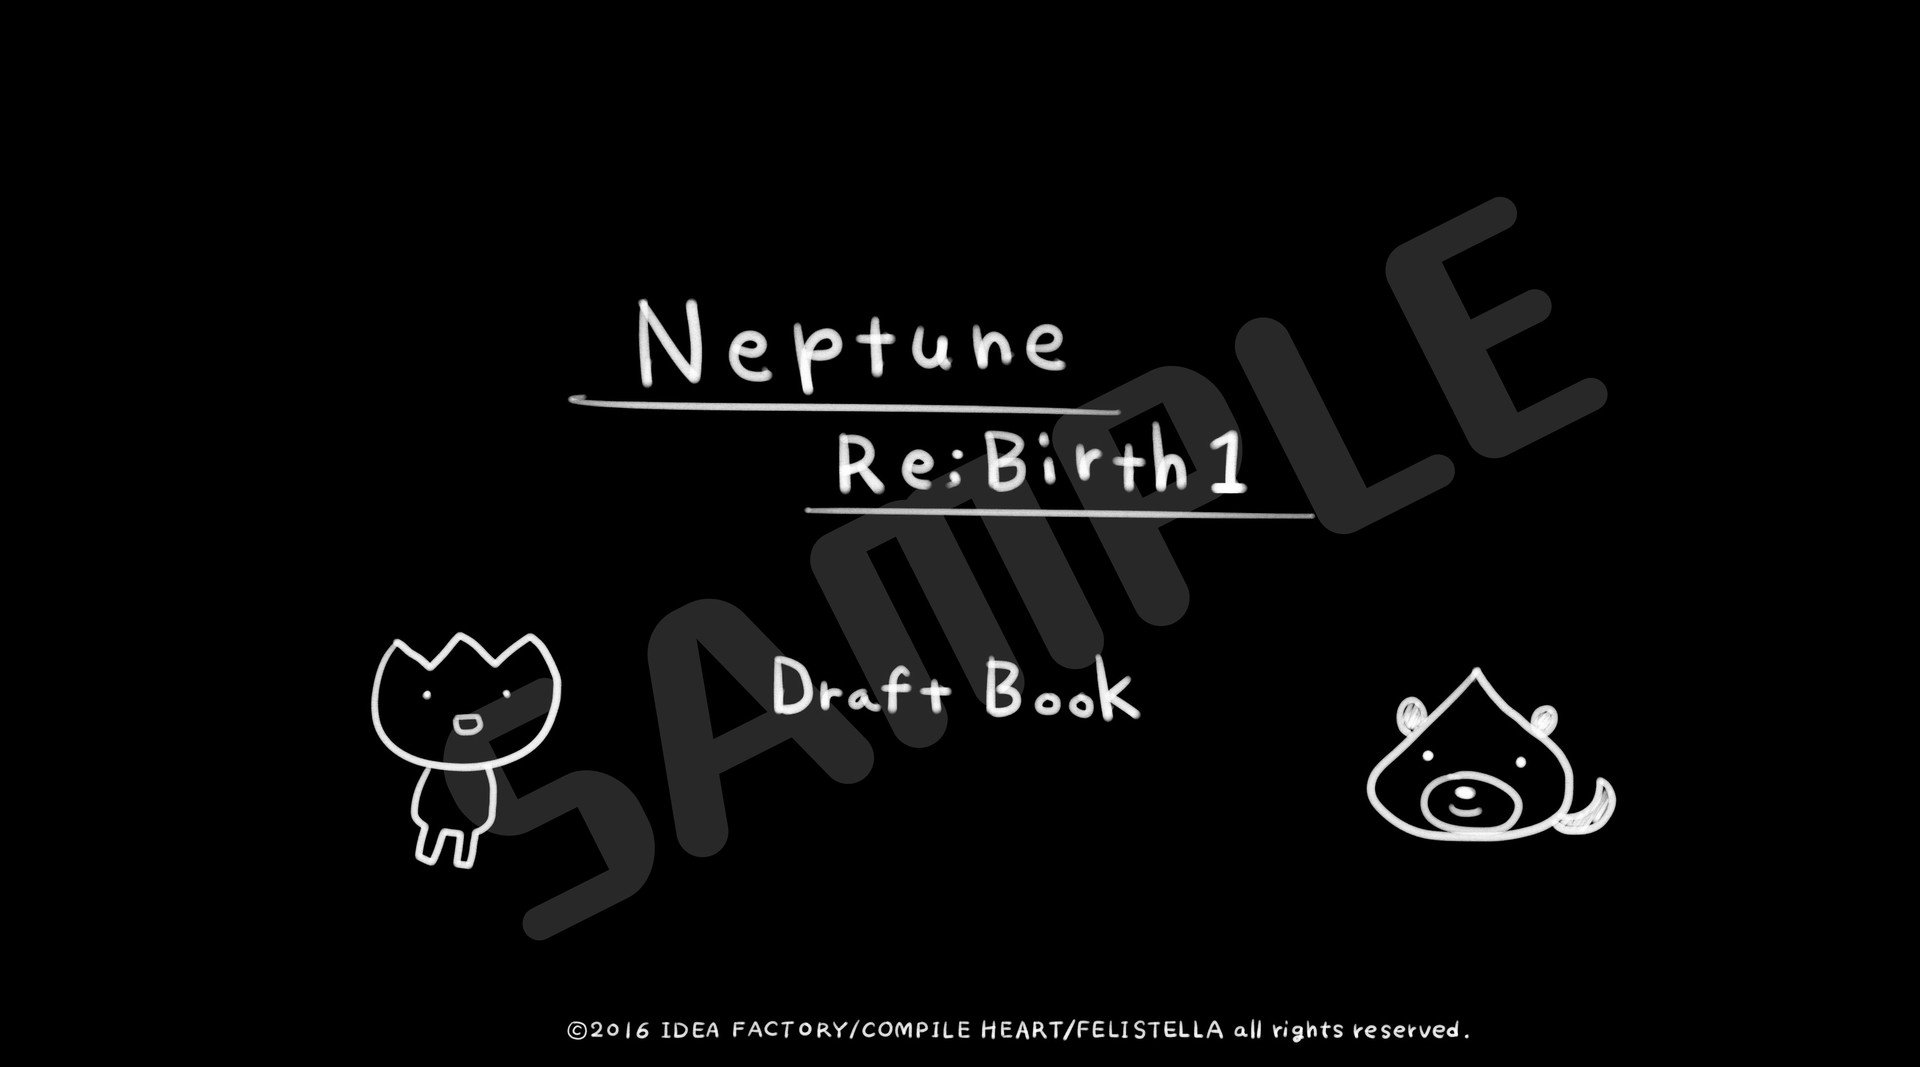 Hyperdimension Neptunia ReBirth1 Deluxe Pack 4